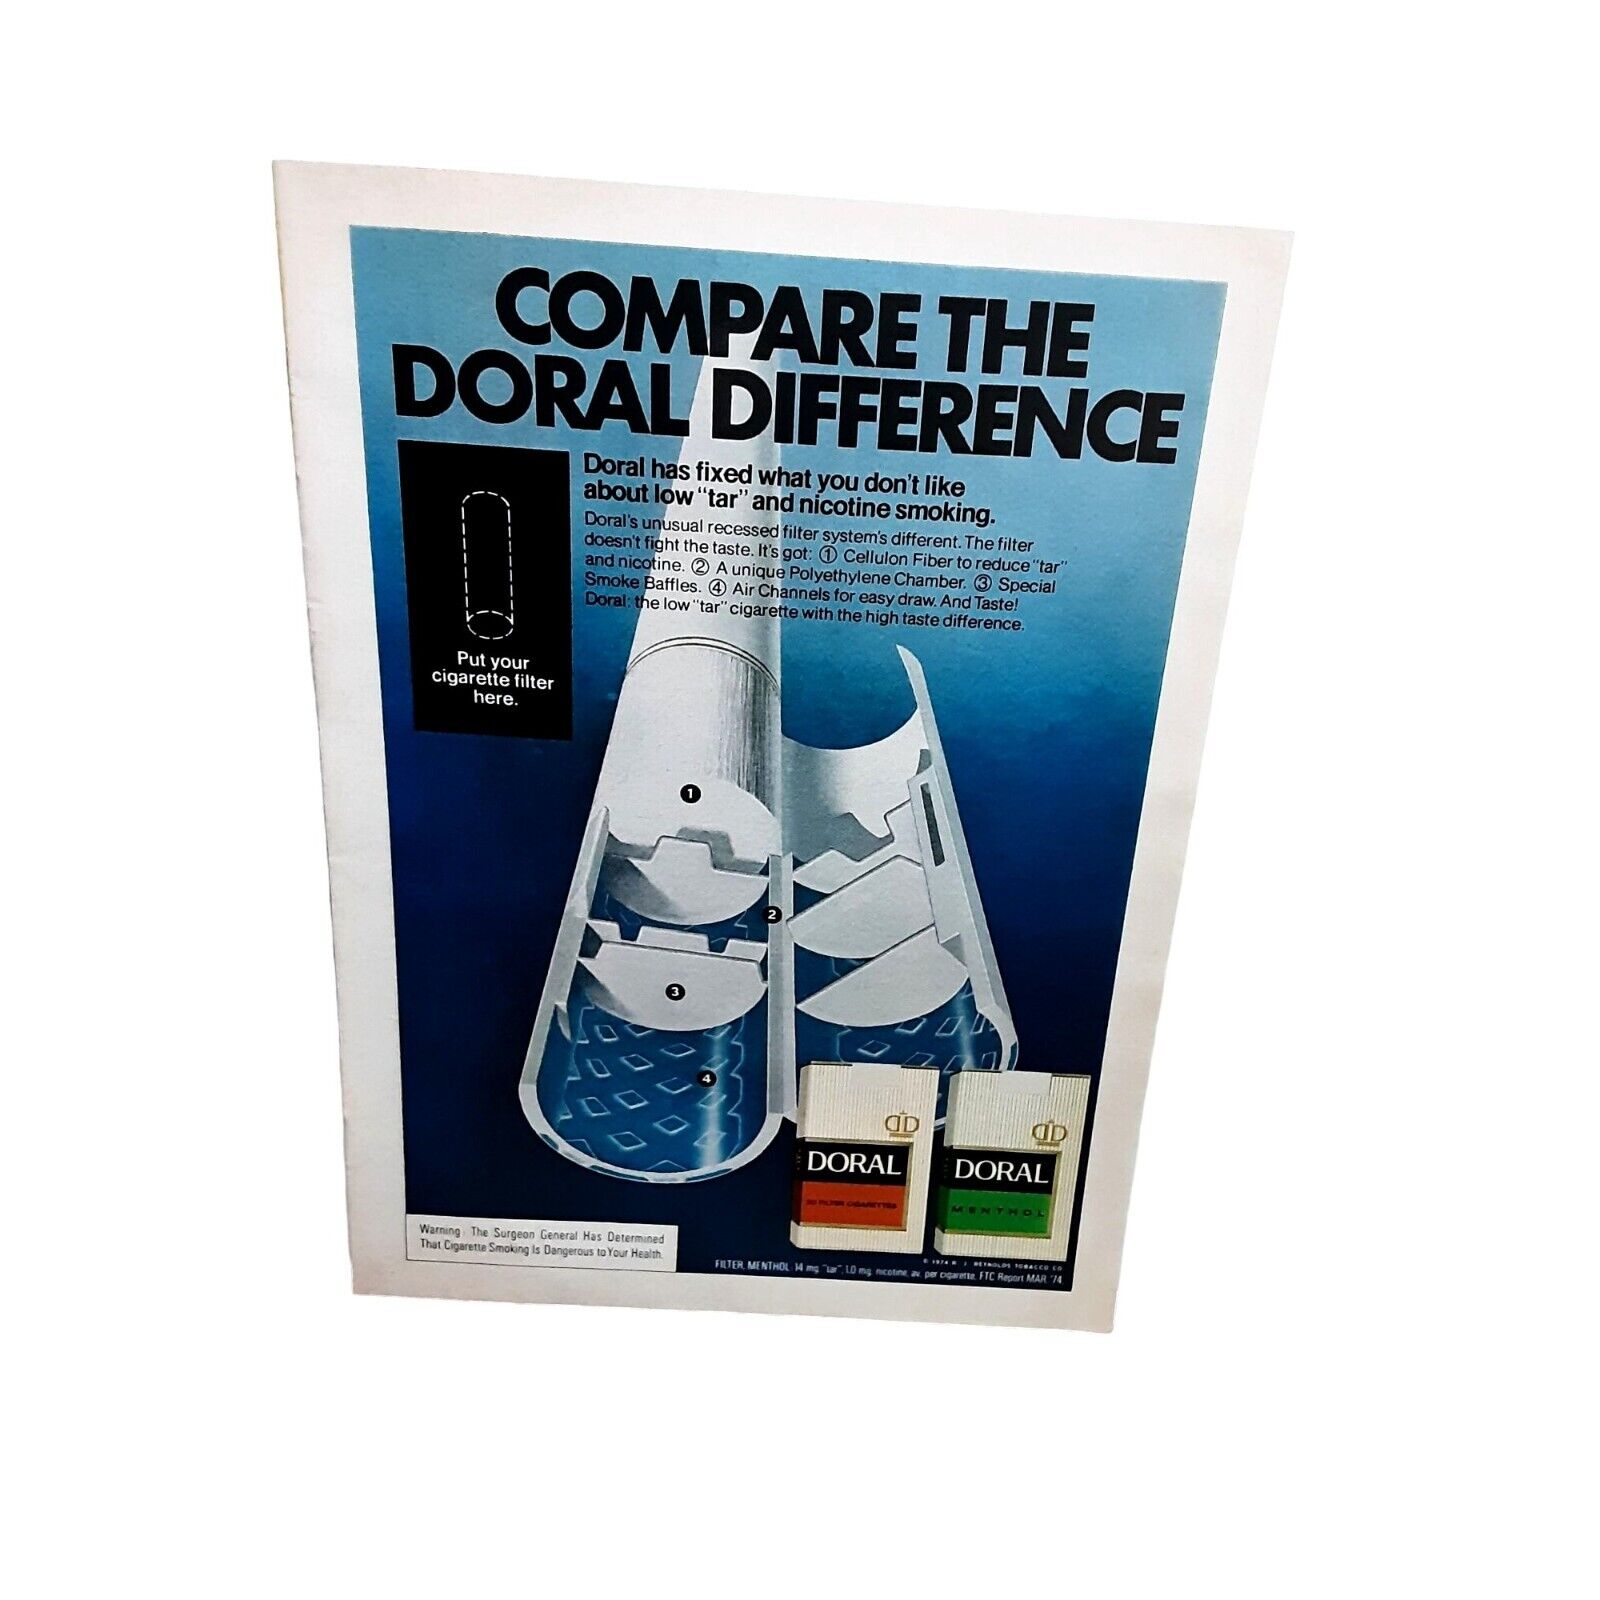 1974 Doral Cigarettes Compare The Difference Original Print ad 70s